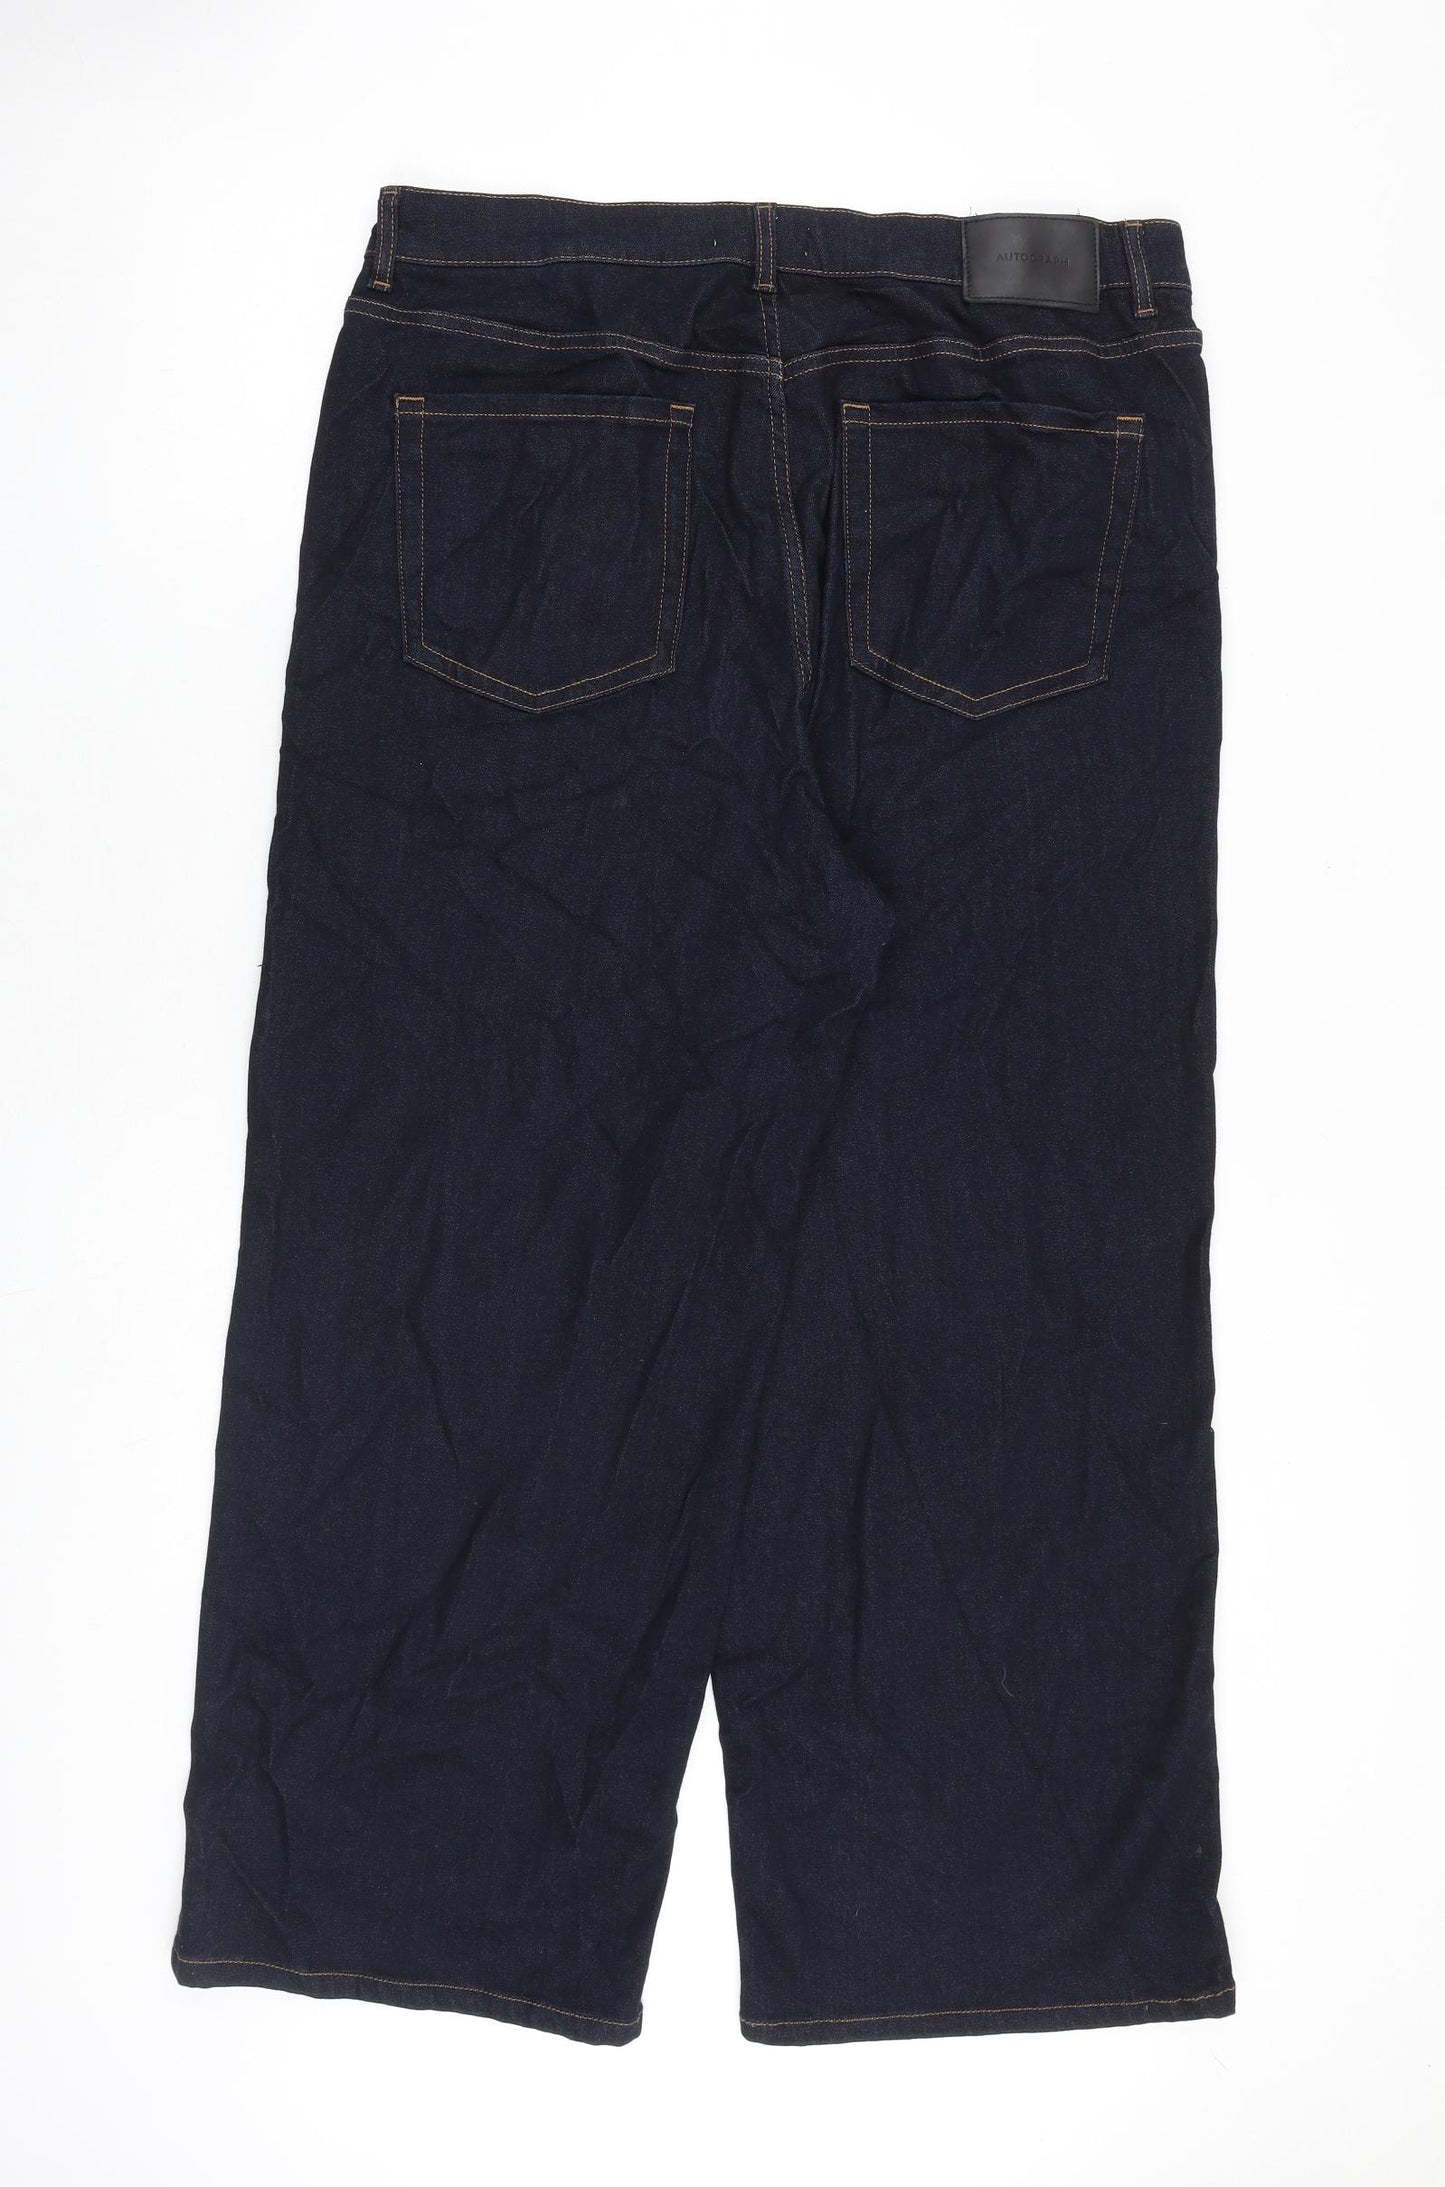 Autograph Womens Blue Cotton Wide-Leg Jeans Size 20 L28 in Regular Zip